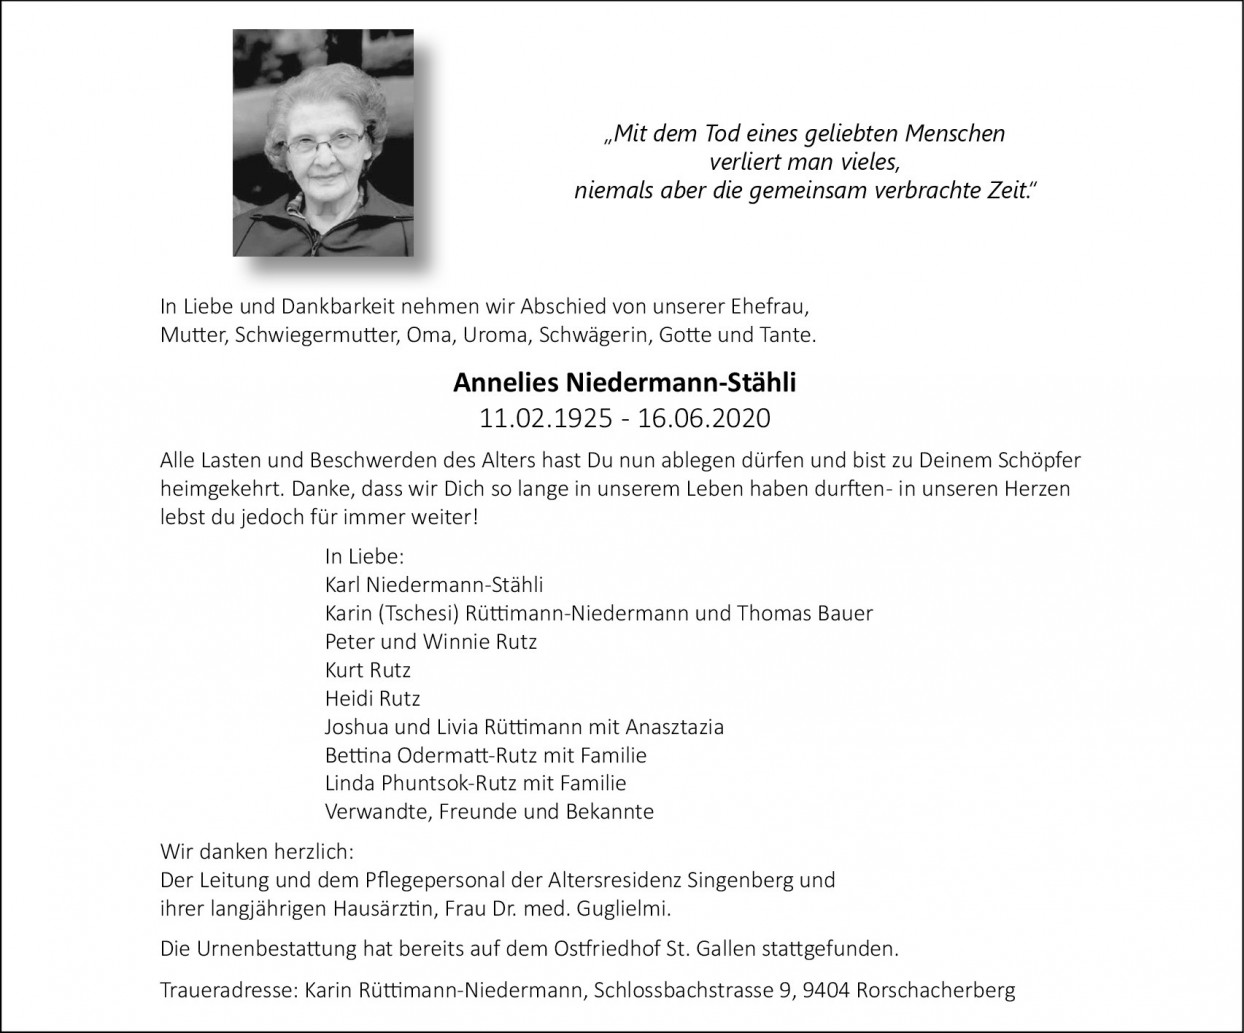 Annelies Niedermann-Stähli